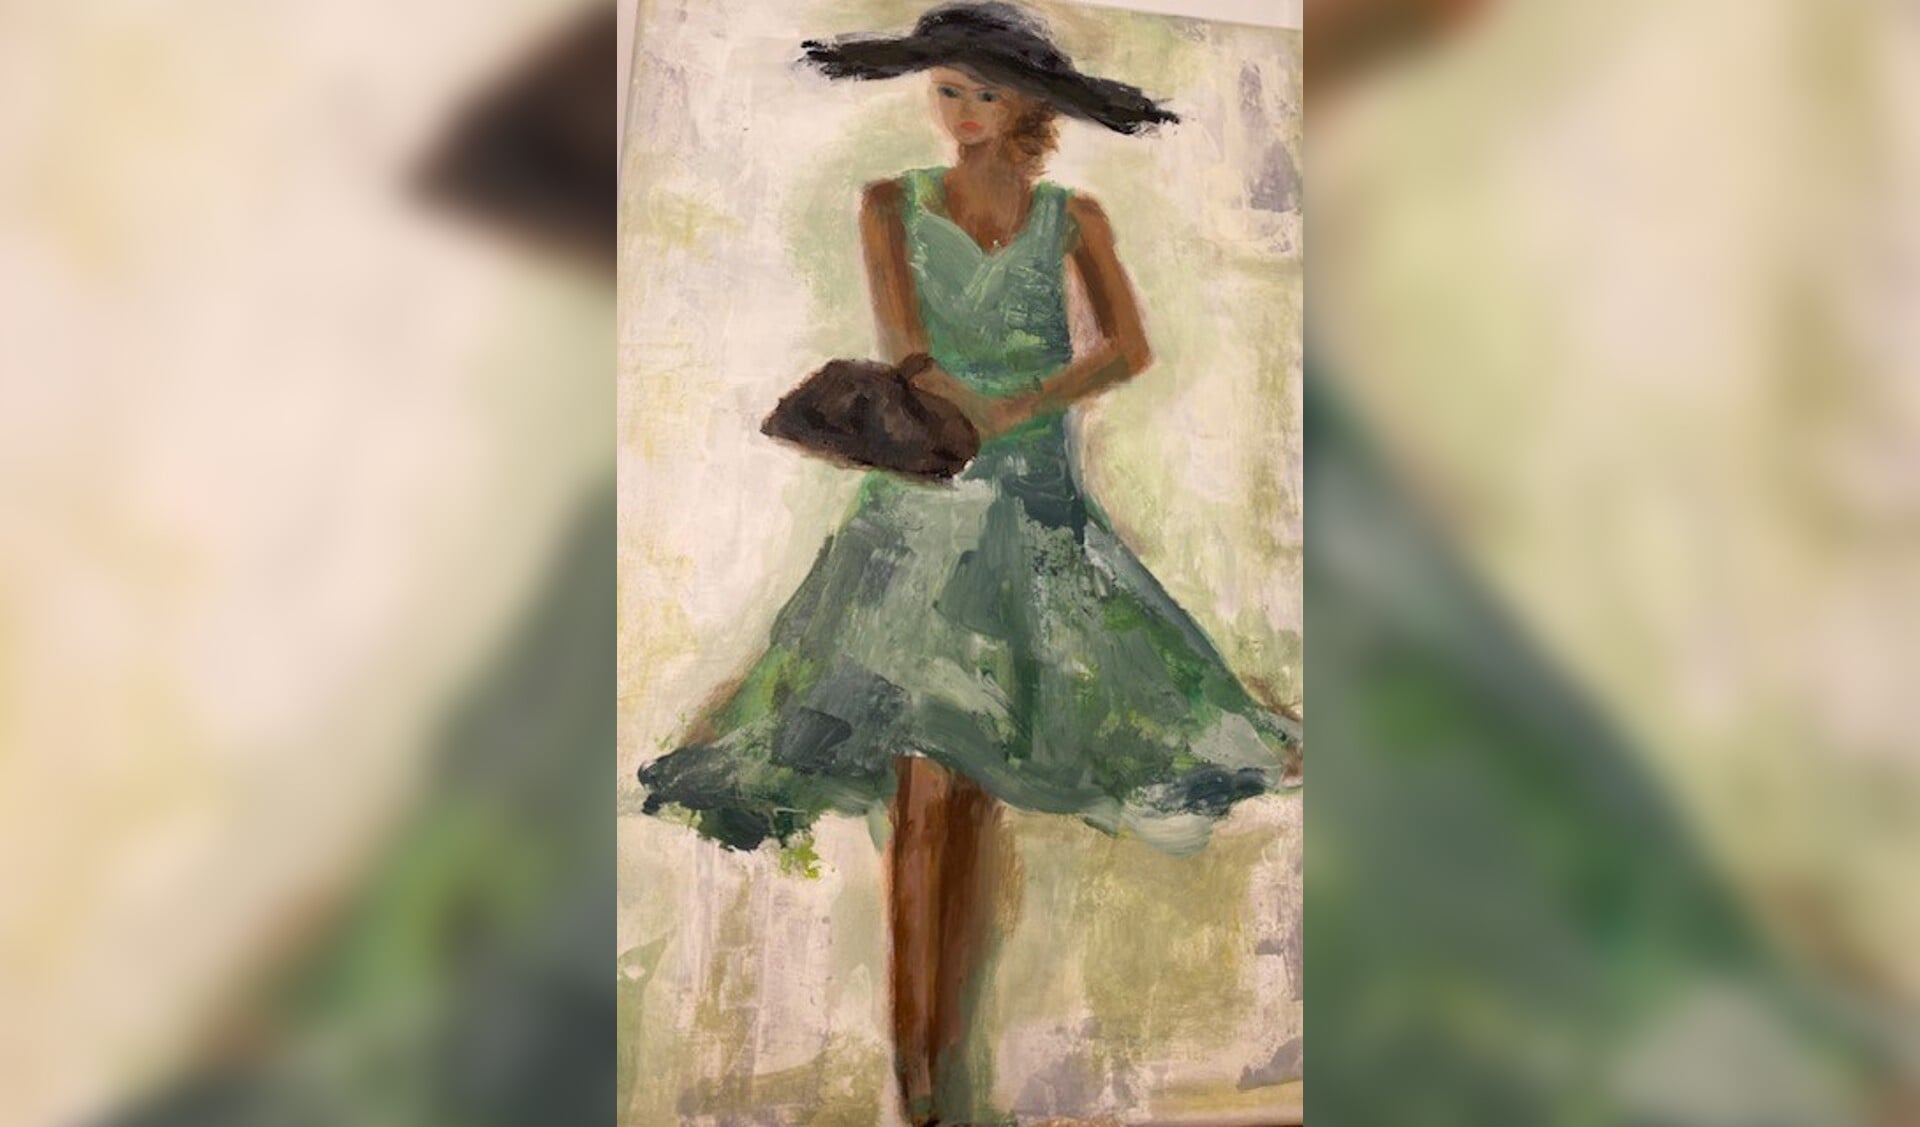 'Vrouw in jurk' heet dit schilderij van Sandra Sahertian.